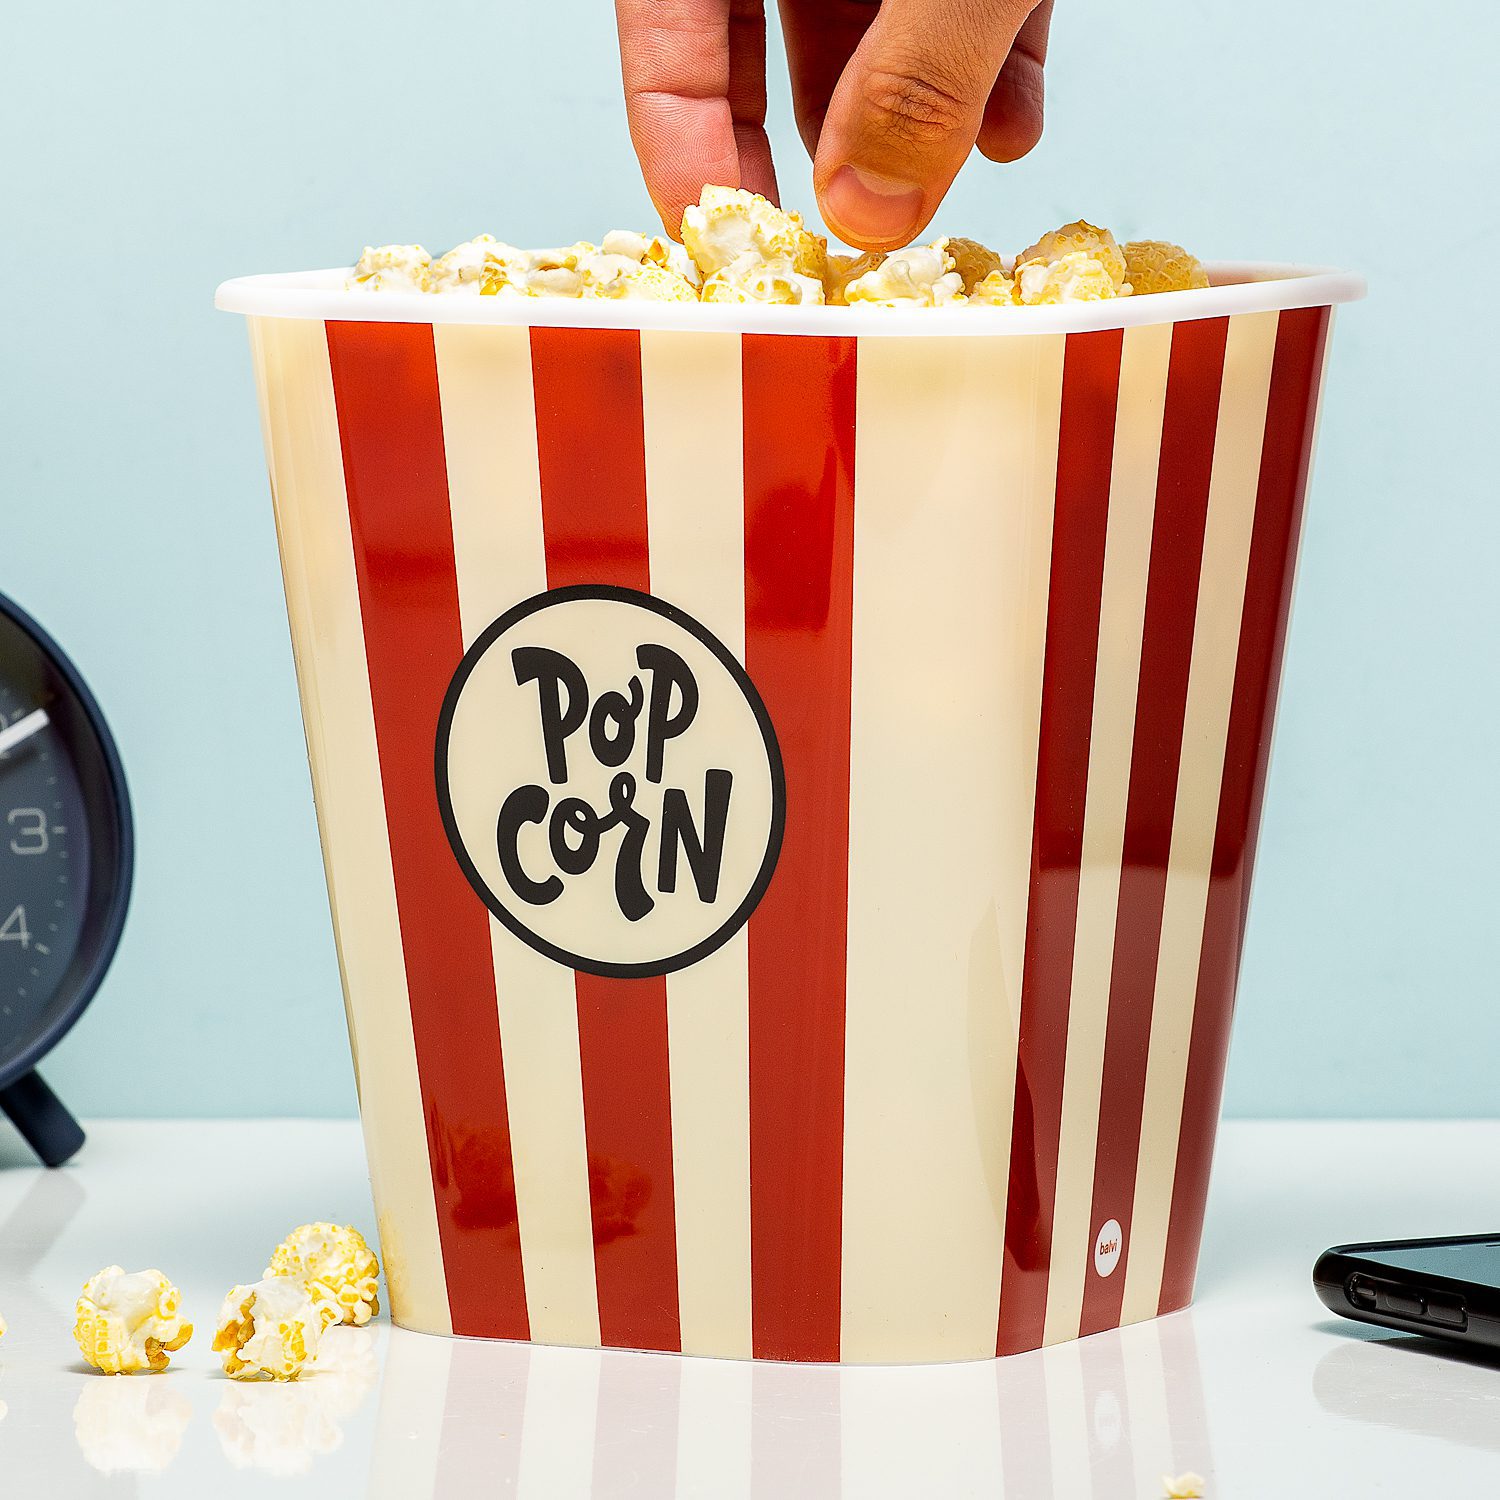 handel het formulier Uitdrukking Retro popcorn bak van Balvi bestel je online bij Ditverzinjeniet